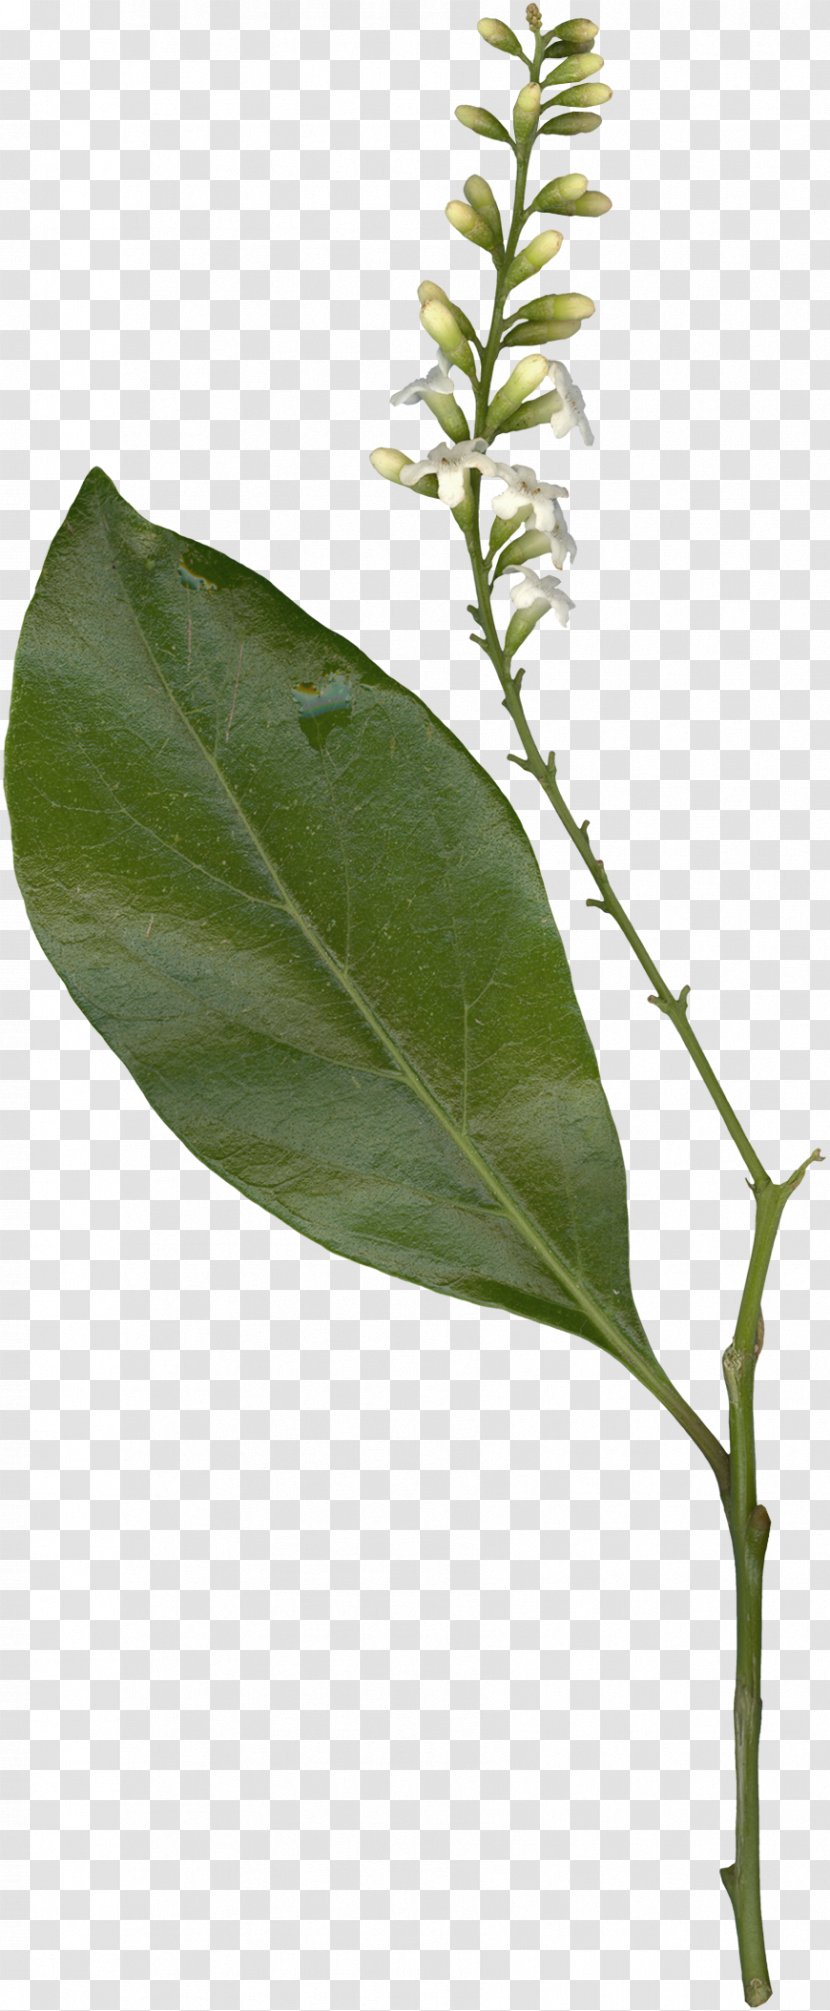 Twig Branch Plant Stem Leaf Tree Transparent PNG